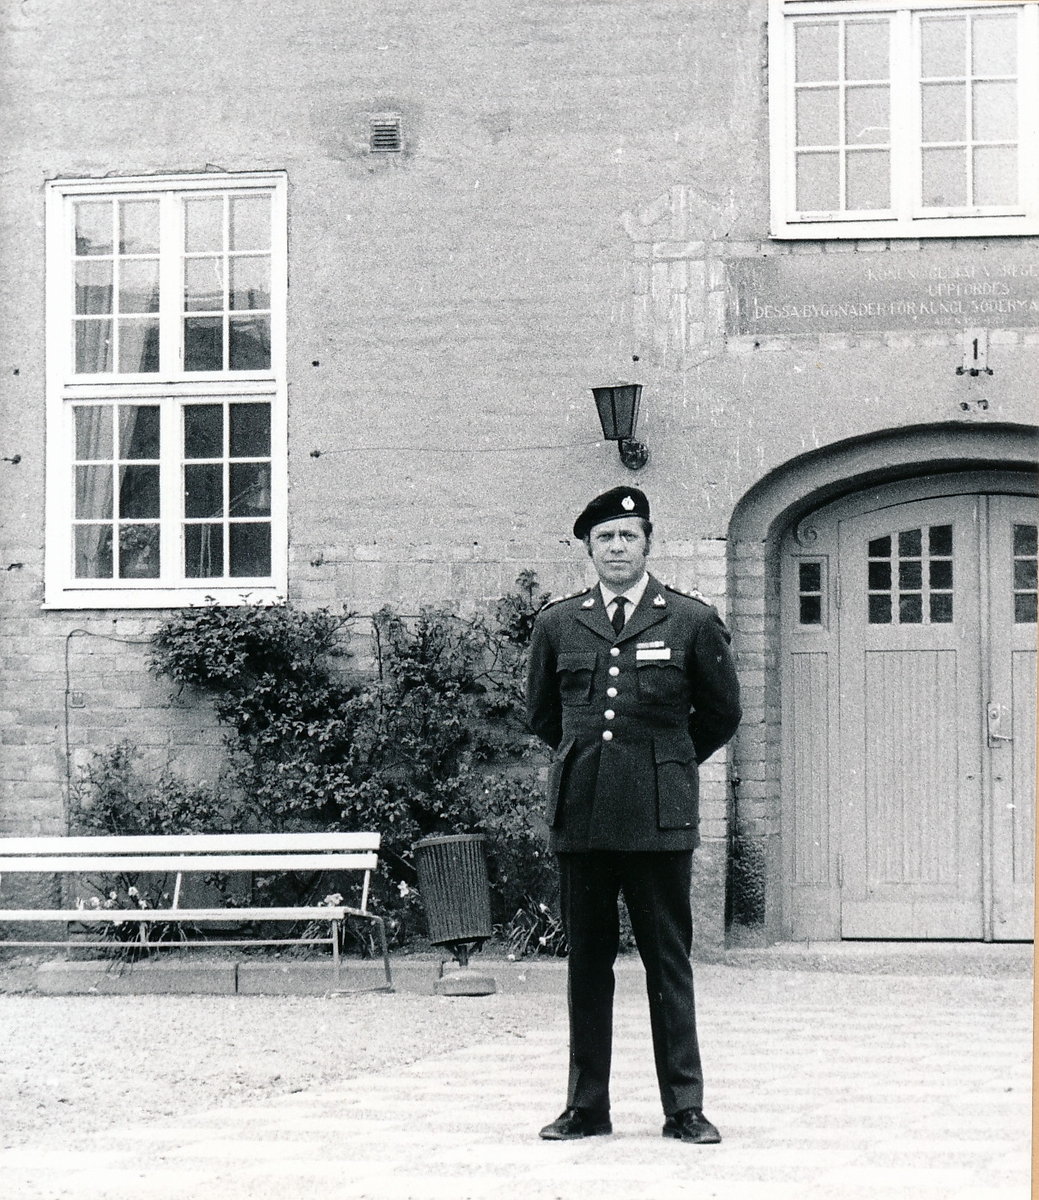 Regementets och försvarsområdets dag den 4 maj 1974

Bild. 1 Bataljonchefen överstelöjtnant Björn Bernroth i väntan på att ta emot bataljonen på kaserngården.

Bild 2-3 Kompanierna ställer upp för avlämning